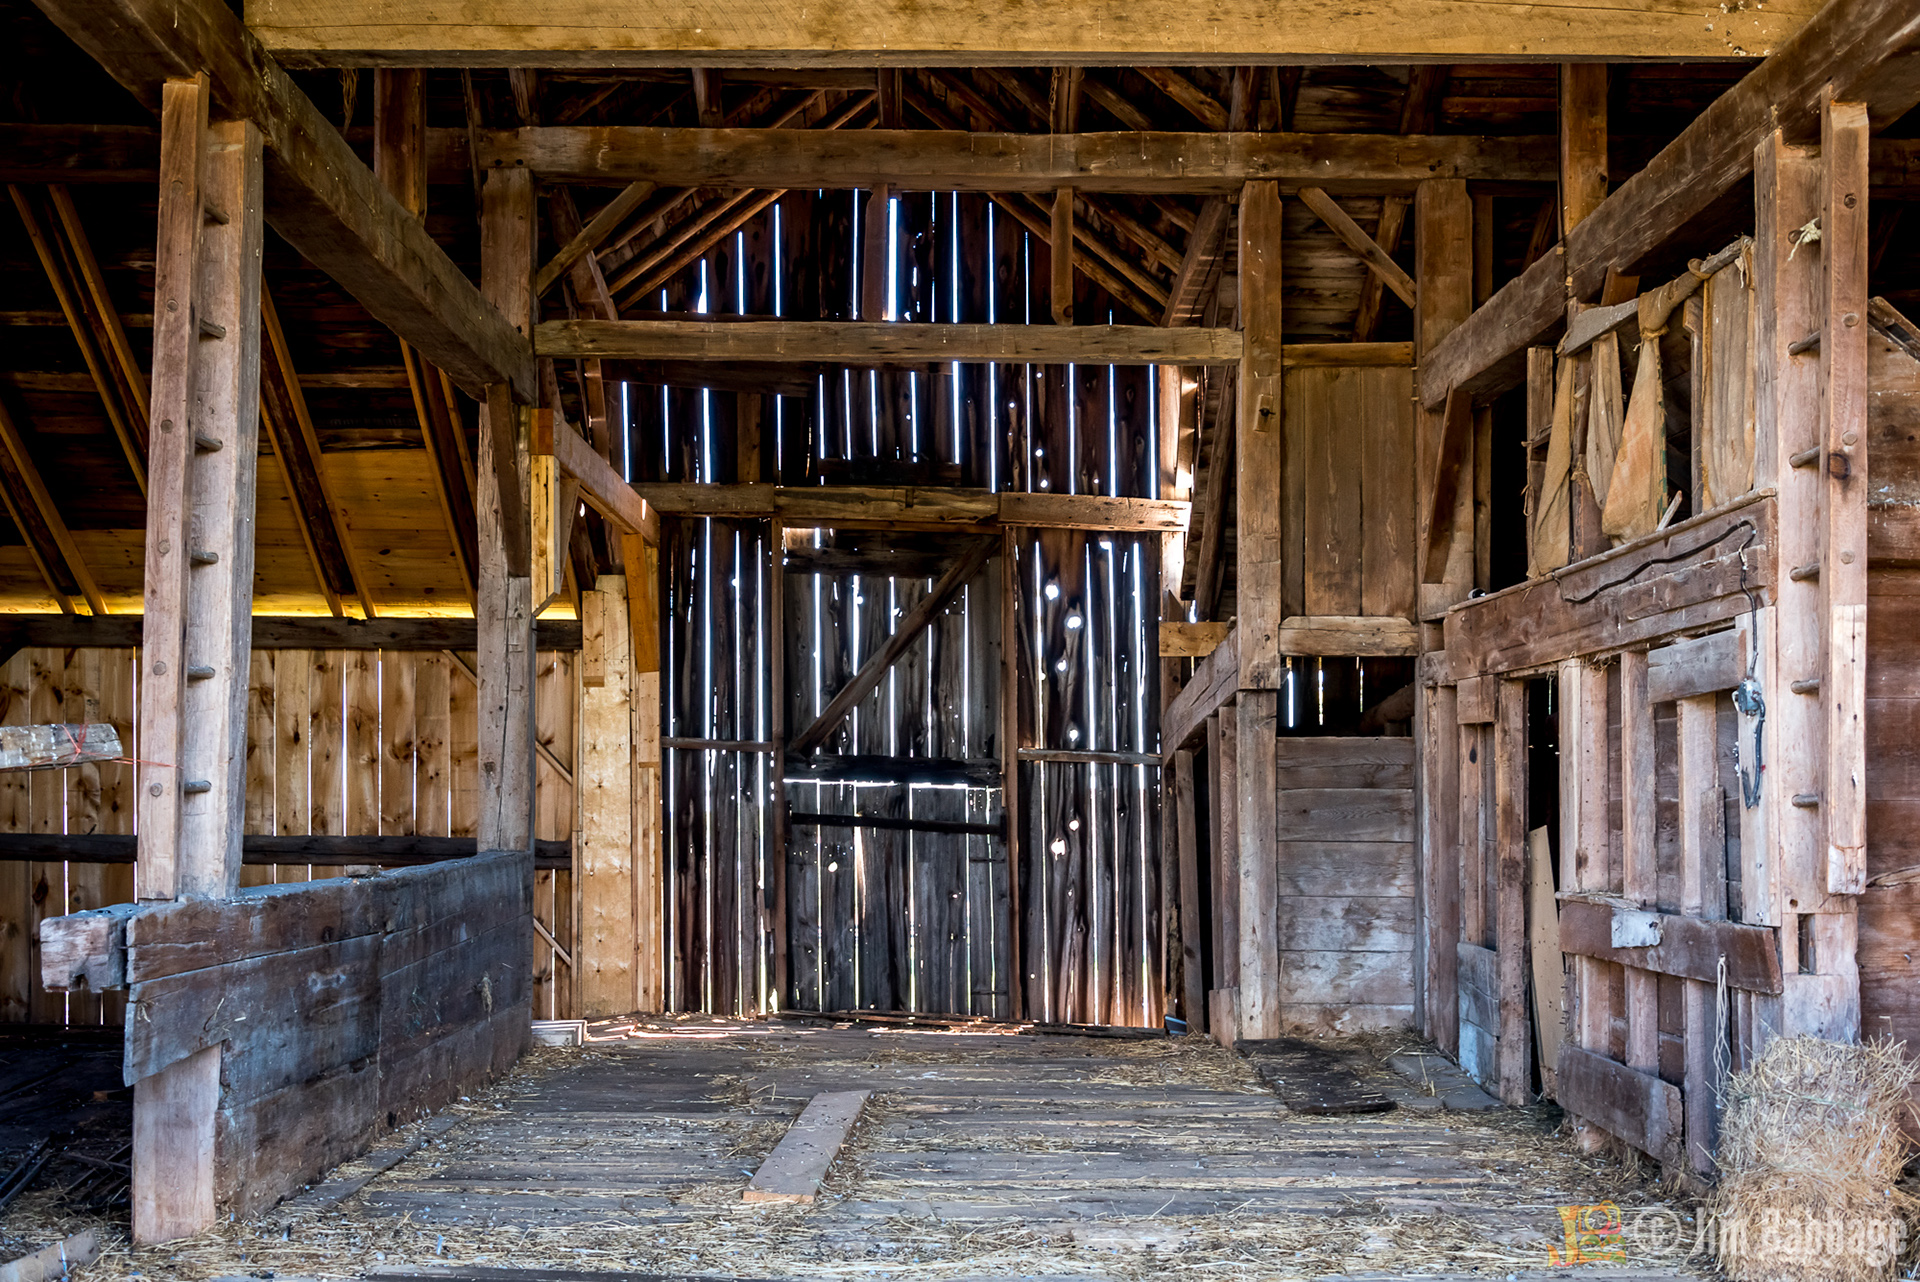 Грязная конюшня. Амбар американский ферма. Farm Barn Interior. Old Barn. Arania] captured Barn.